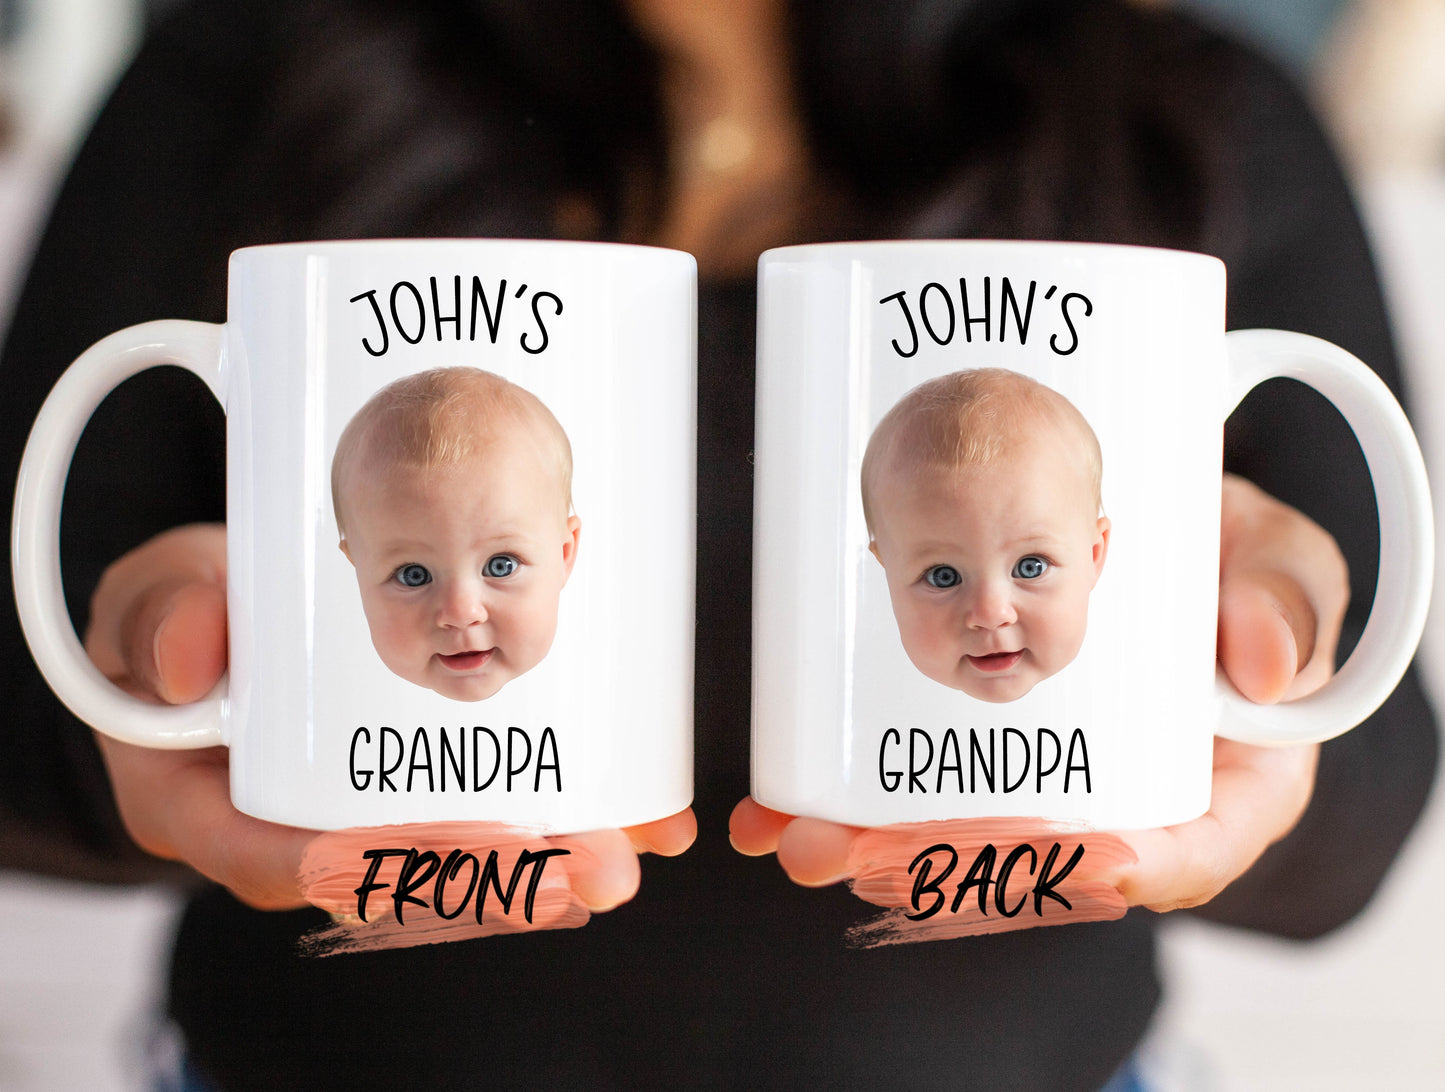 Grandpa Mug Gift, Personalized Baby Face Photo Mug For Grandpa Birthday, Baby Face Coffee Mug, Grandpa Gift, Custom Face Mug For Grandfather